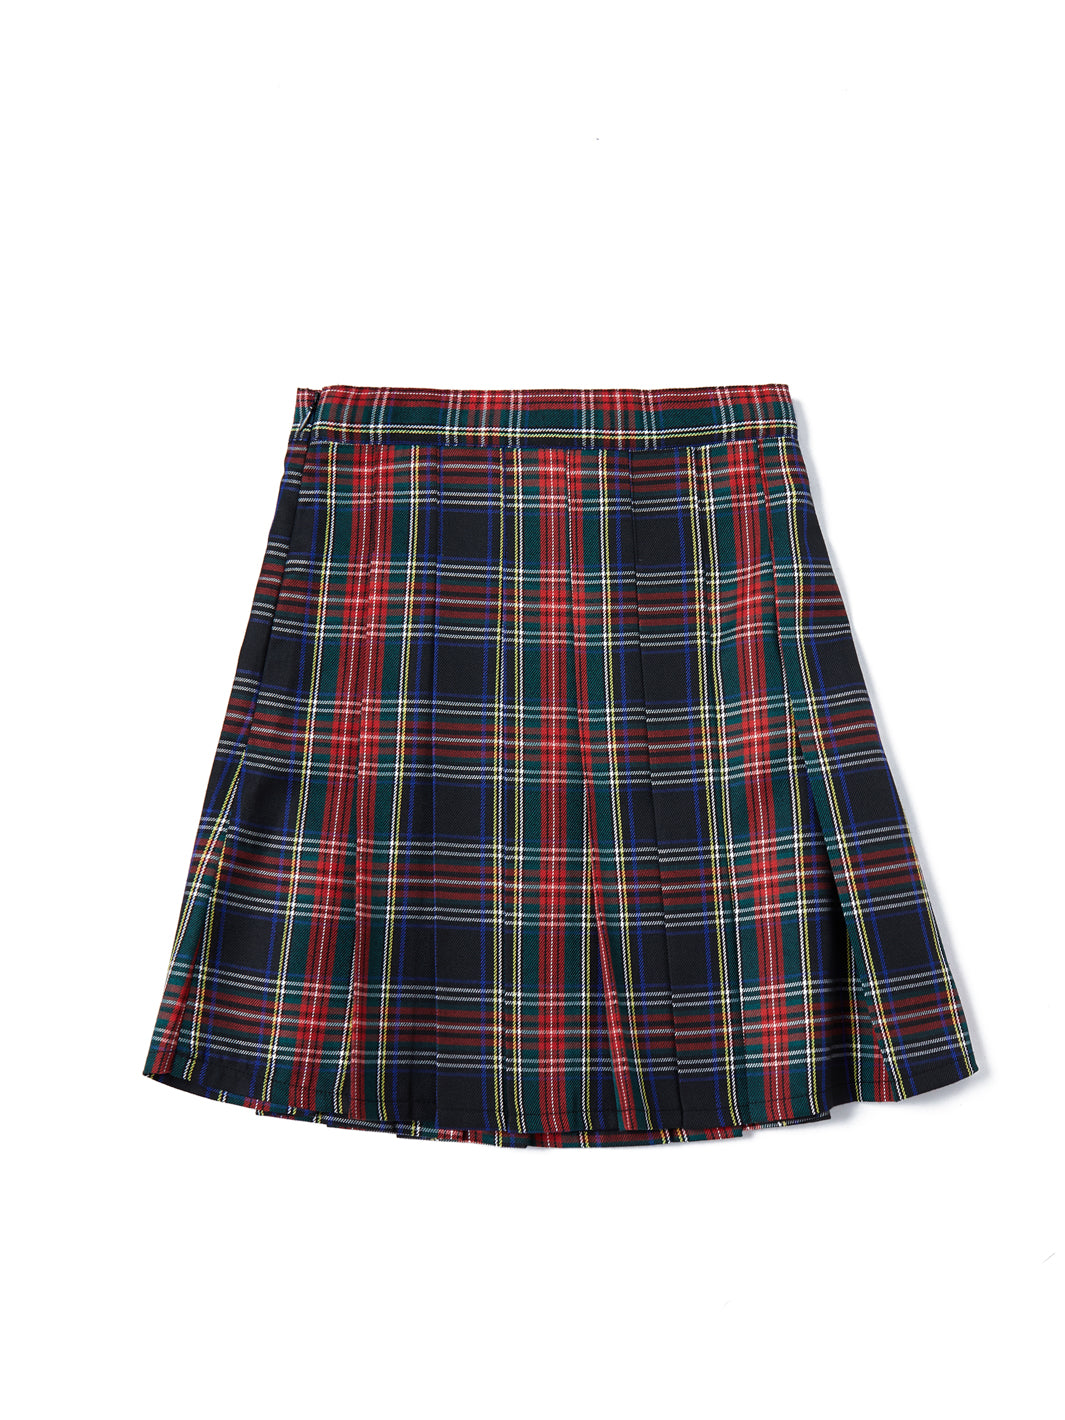 Plaid Pleated Classic Skirt